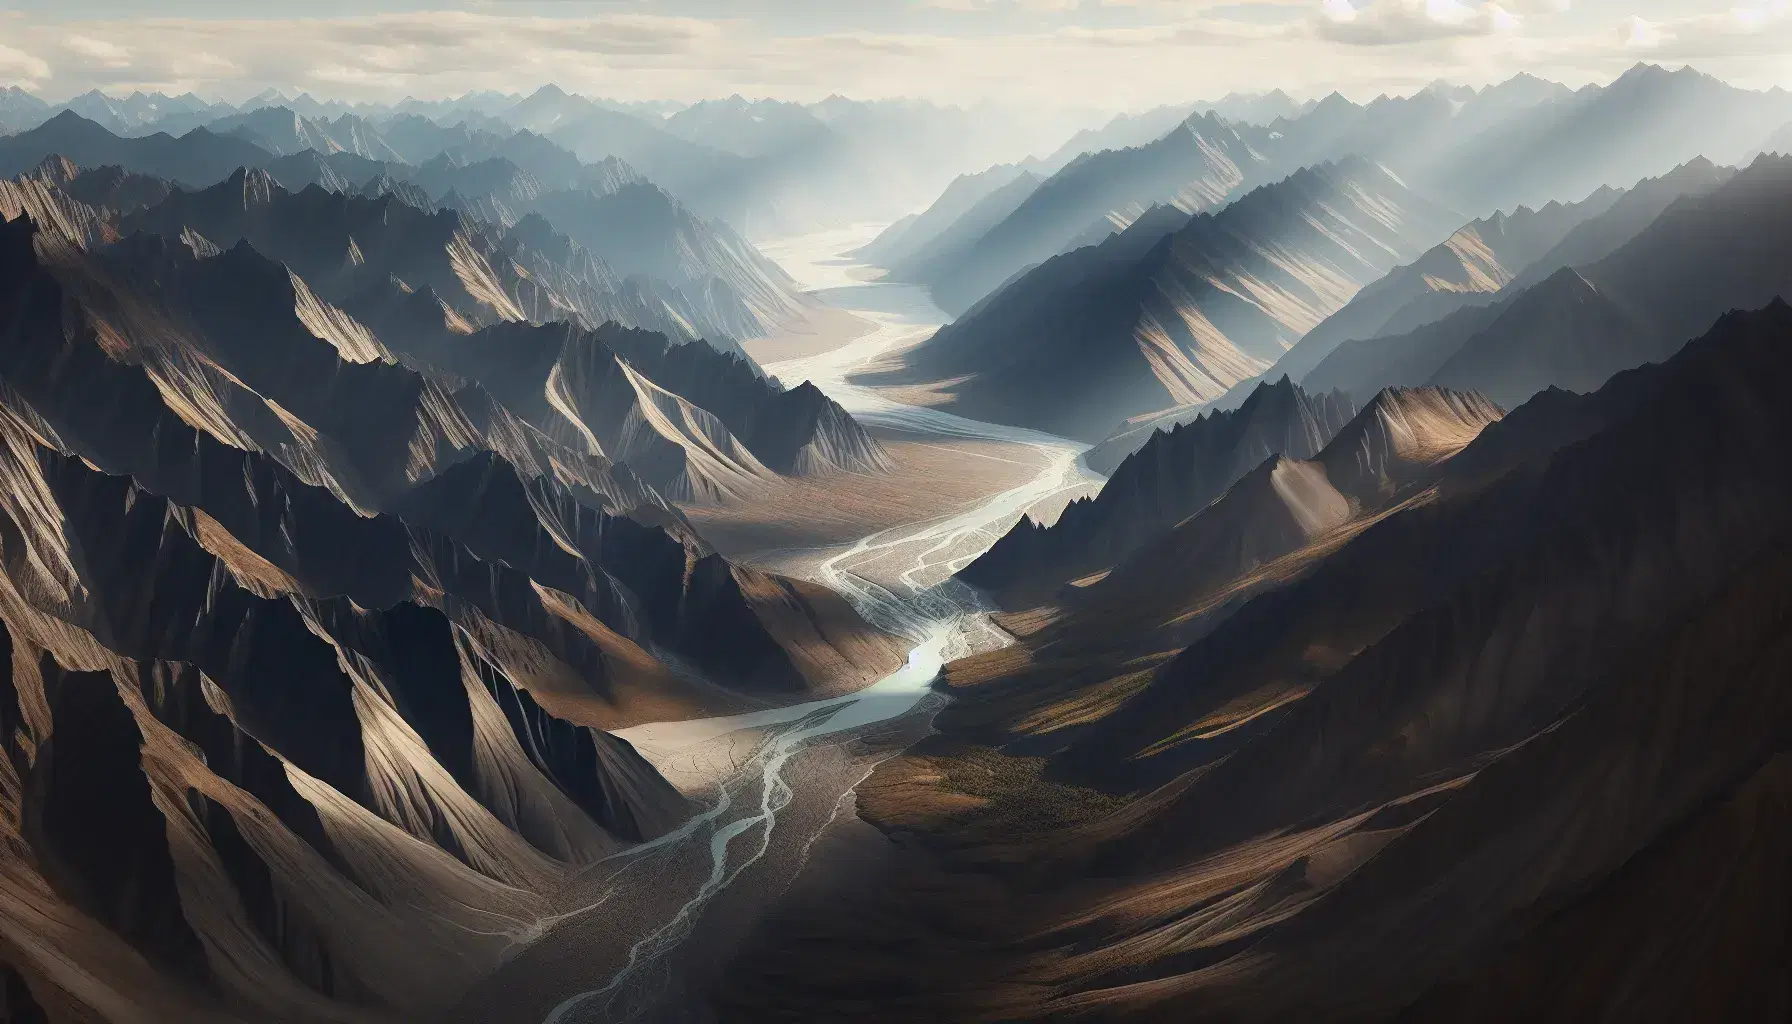 Vista aérea de una cadena montañosa con picos y valles, un río serpenteante y vegetación dispersa bajo un cielo despejado, sin señales de intervención humana.